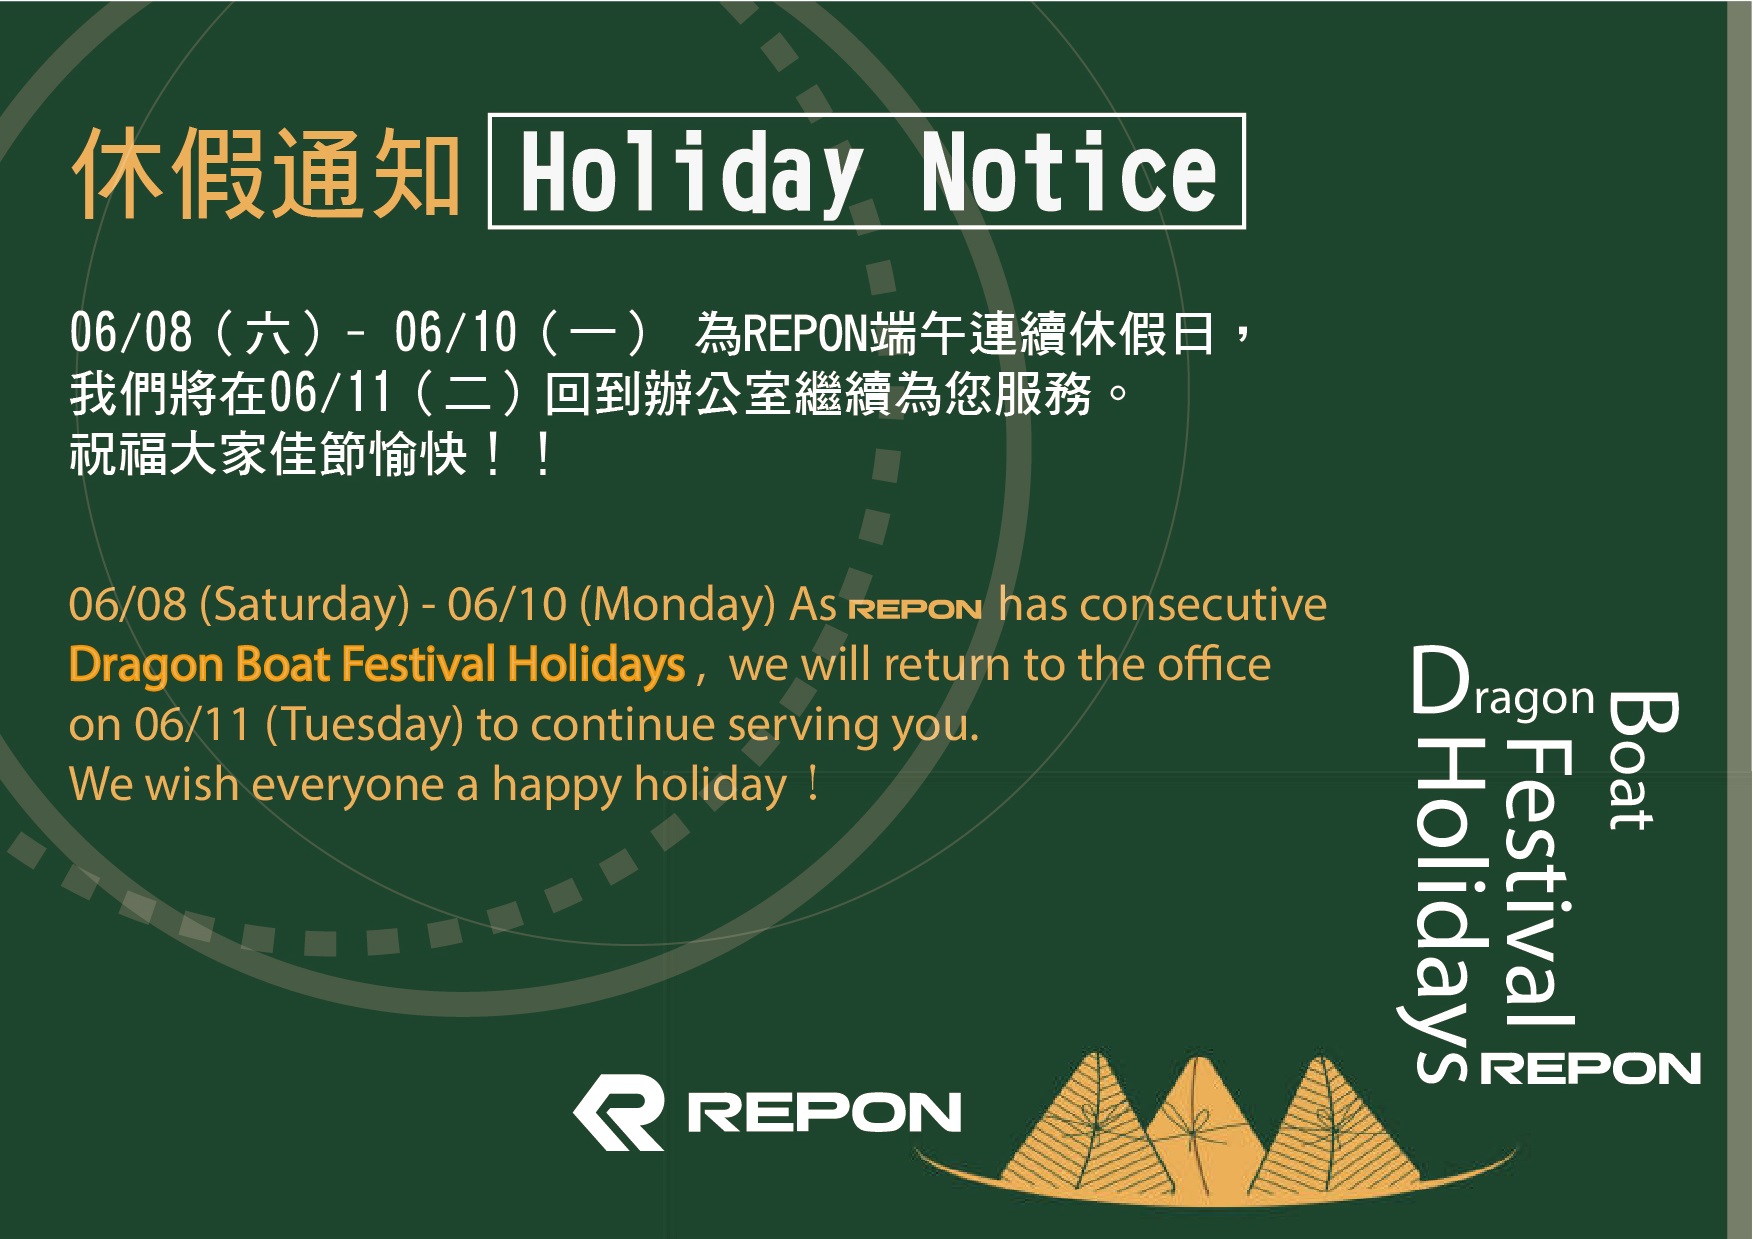 *** Holiday Notice ***